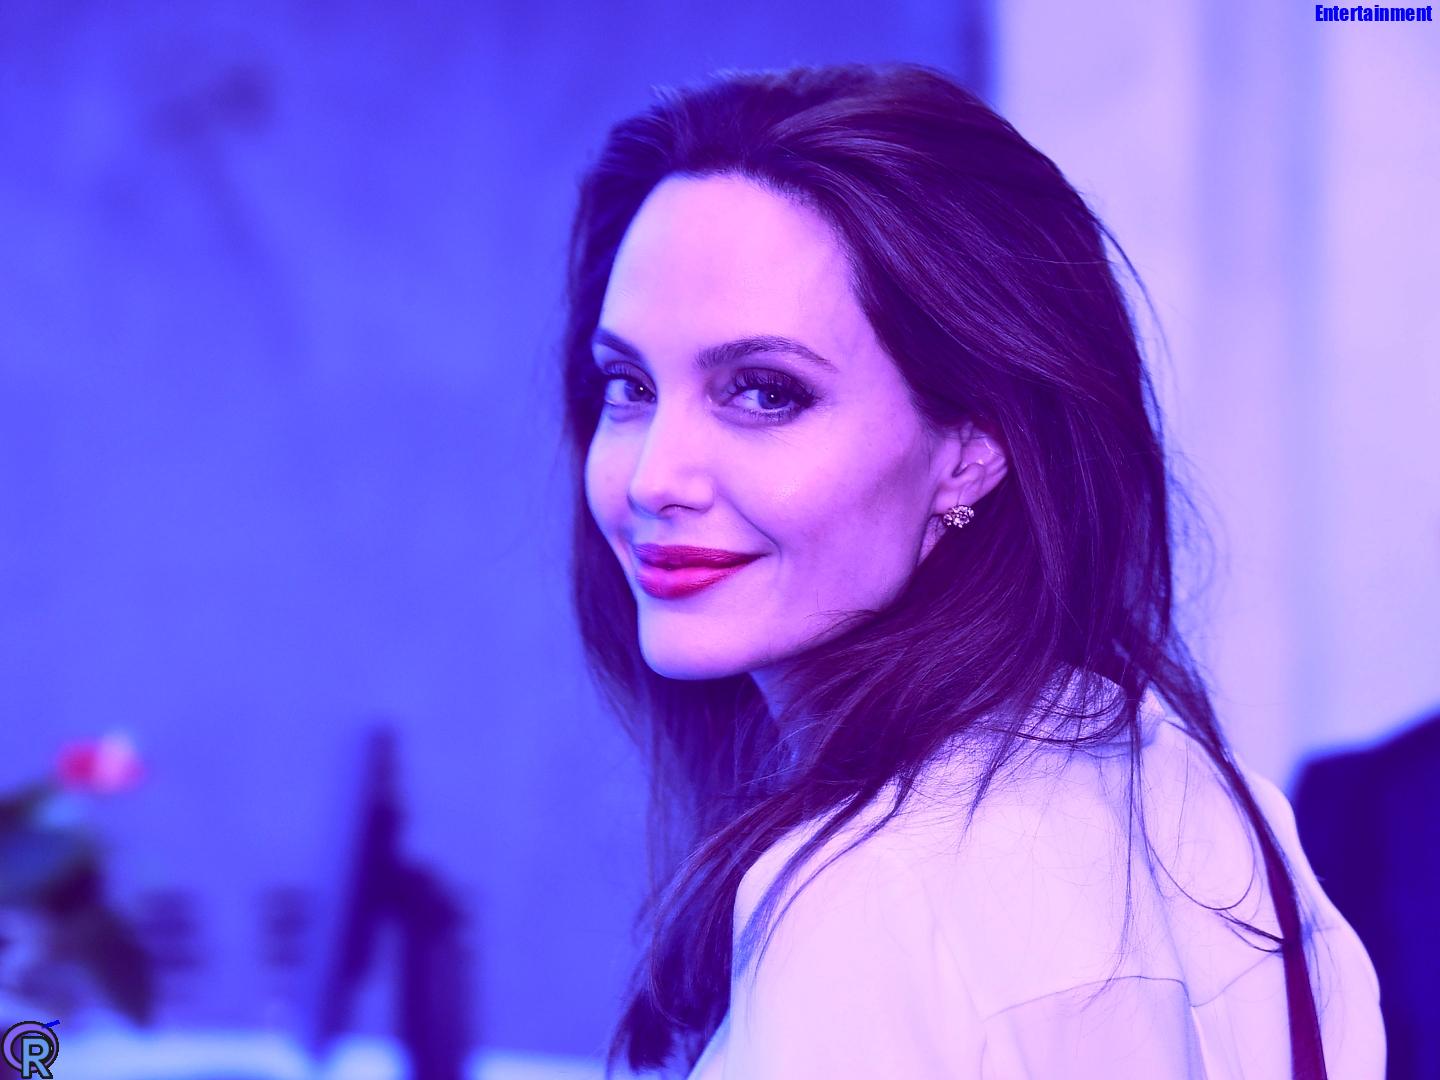 James Haven Angelina Jolie Relationship